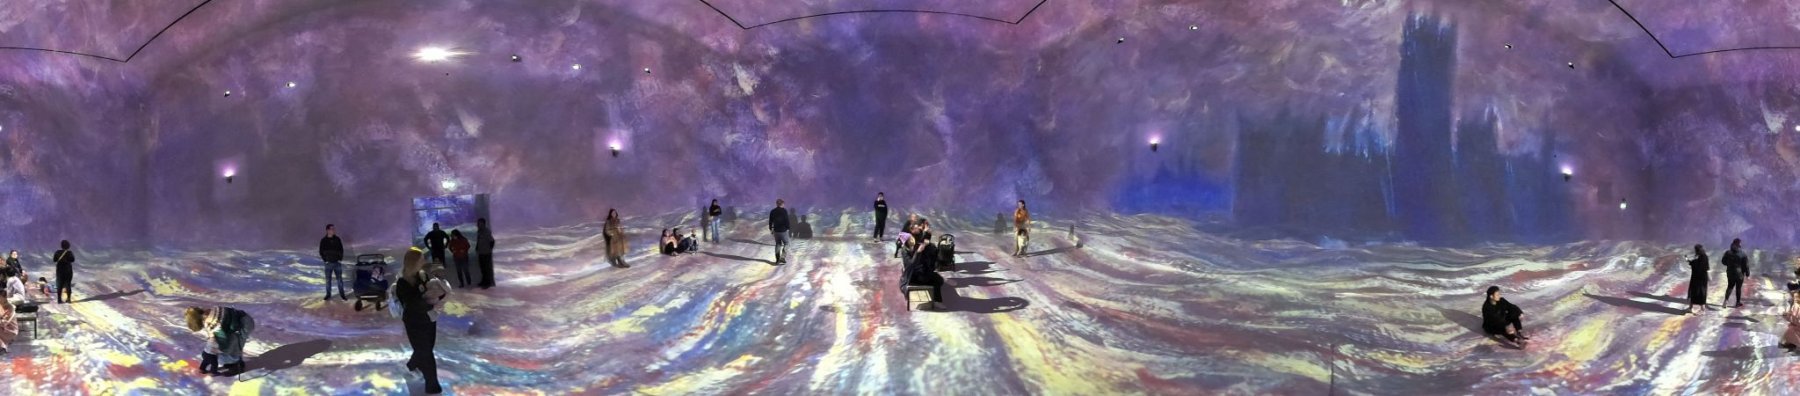 Frameless immersive art show, Marble Arch London, 16-Jan-2023.